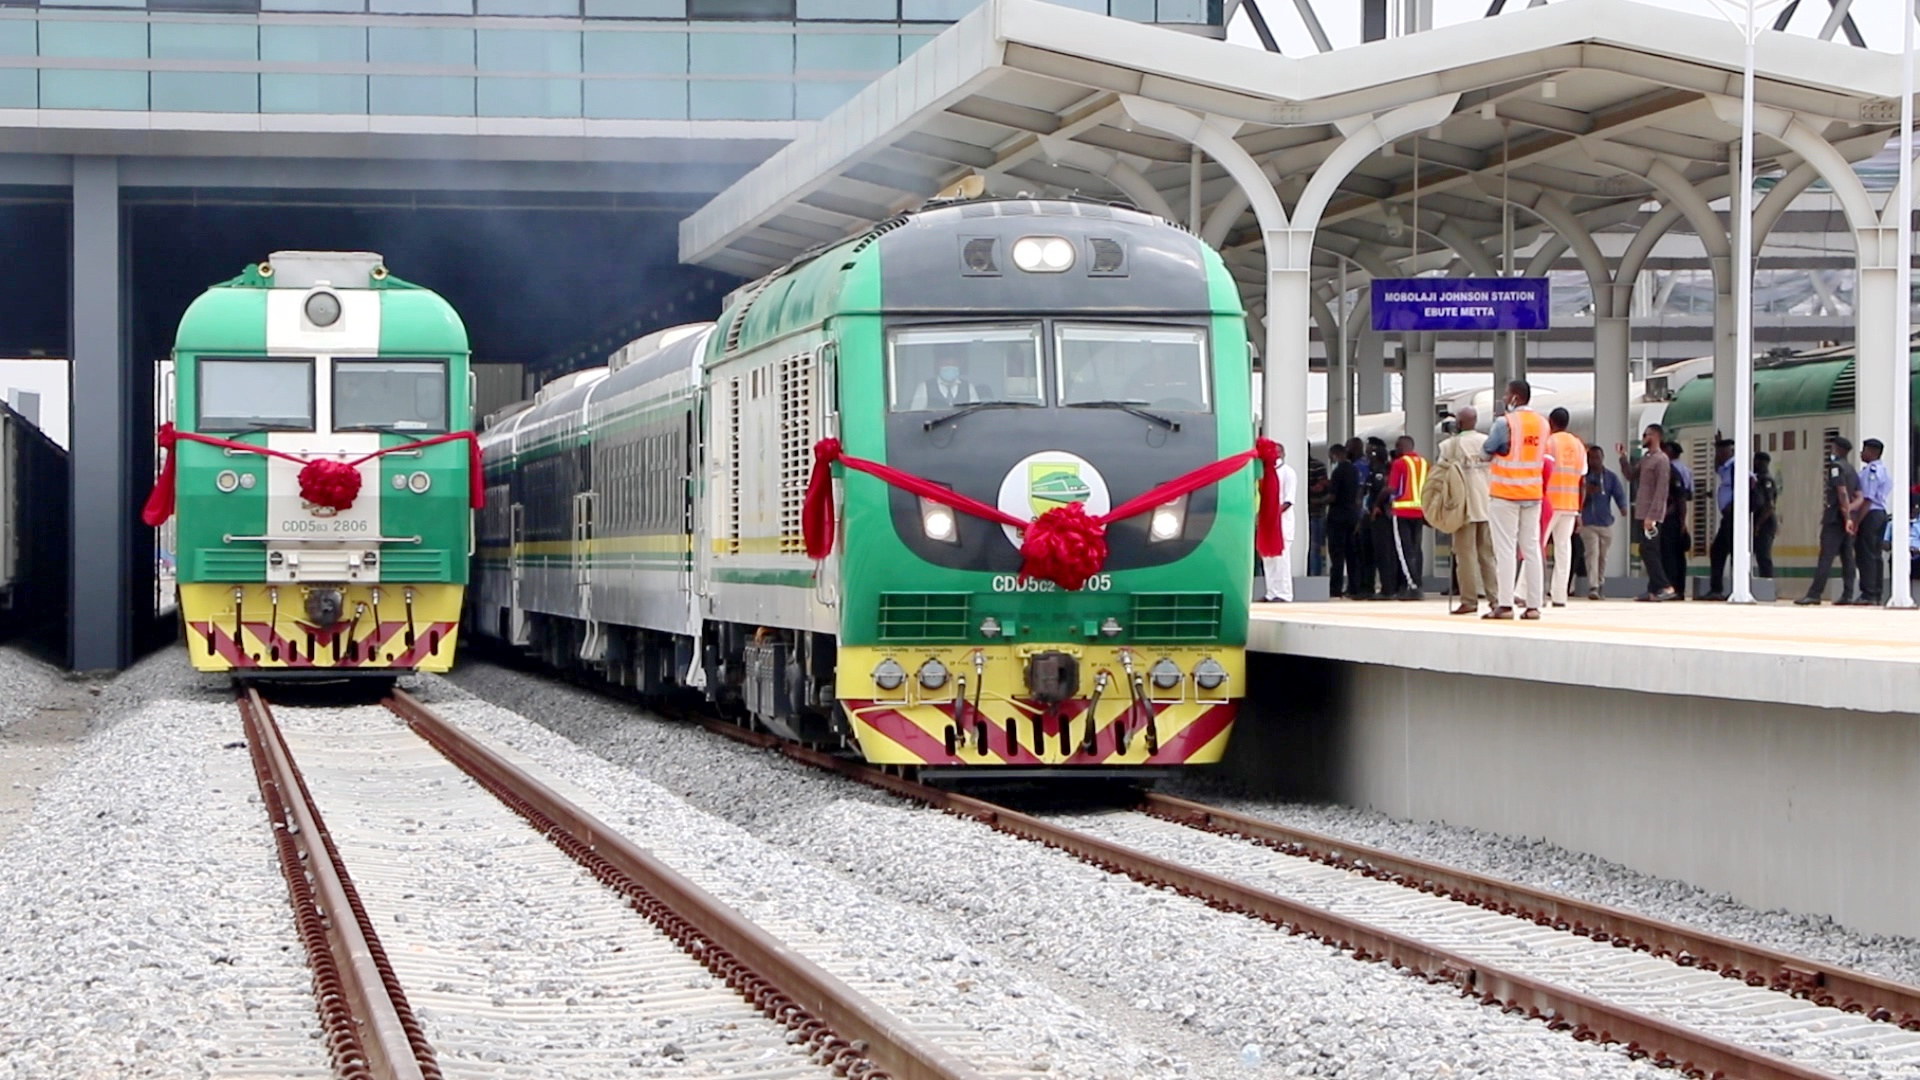 拉伊铁路客车中国土木董事长赵佃龙表示,今年是中国土木进入尼日利亚